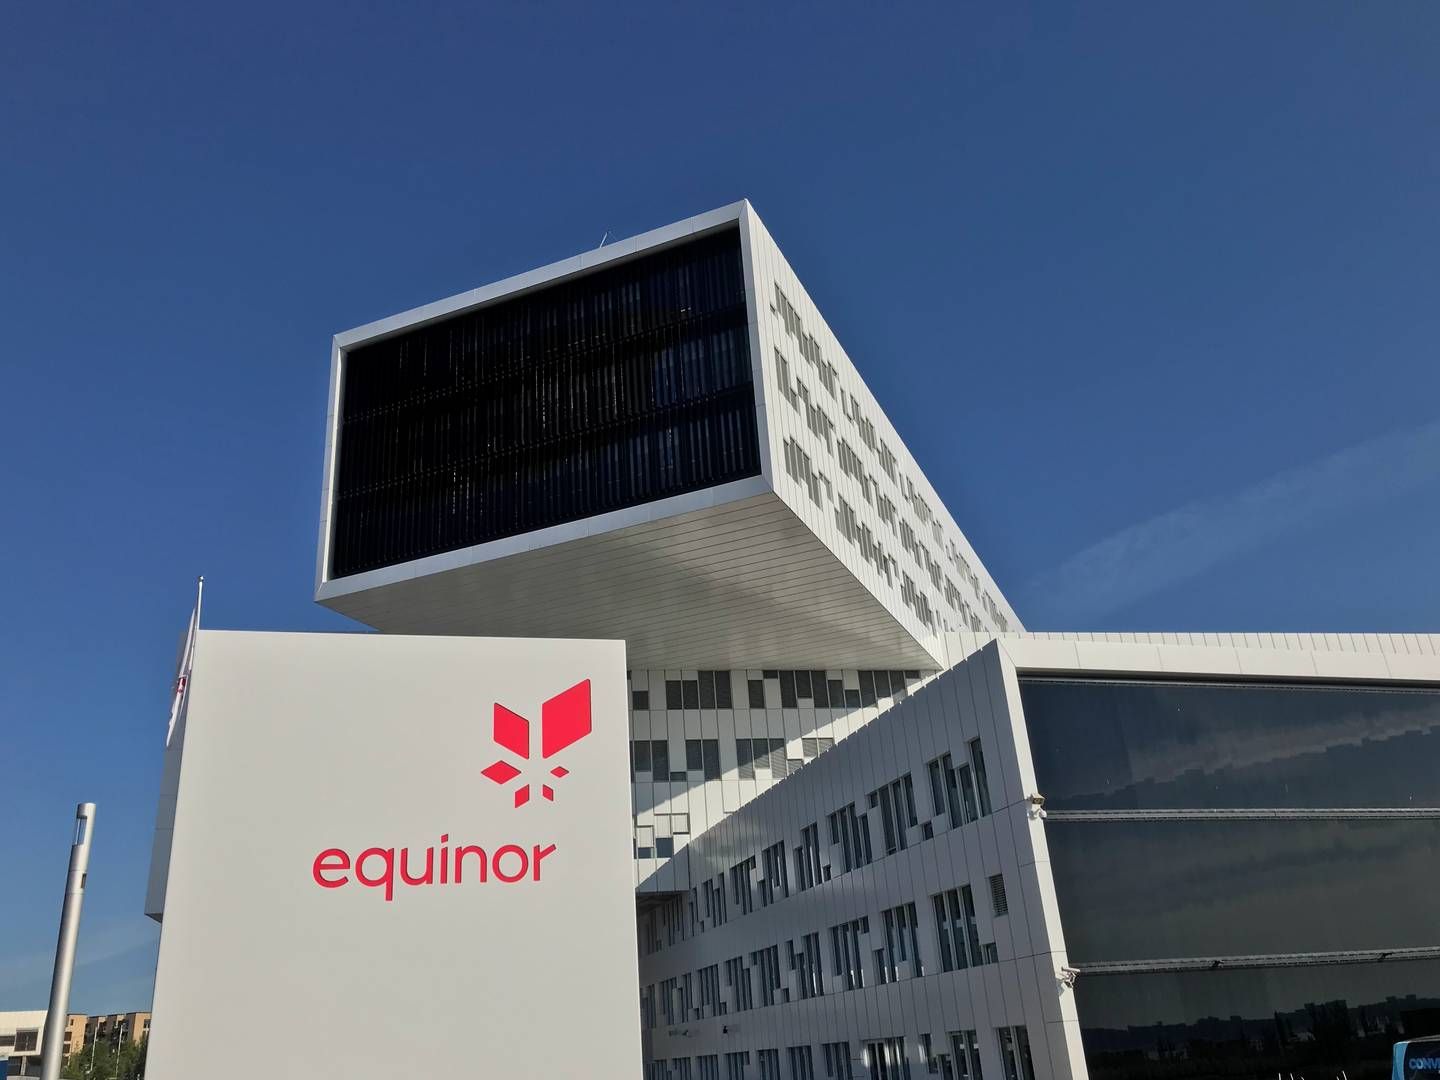 BALANSEPRIS 35 DOLLAR: Equinor oppnådde en snittpris på 80,40 dollar fatet, og de kommende prosjektene har en balansepris på 35 dollar fatet i snitt. | Foto: Anders Lie Brenna